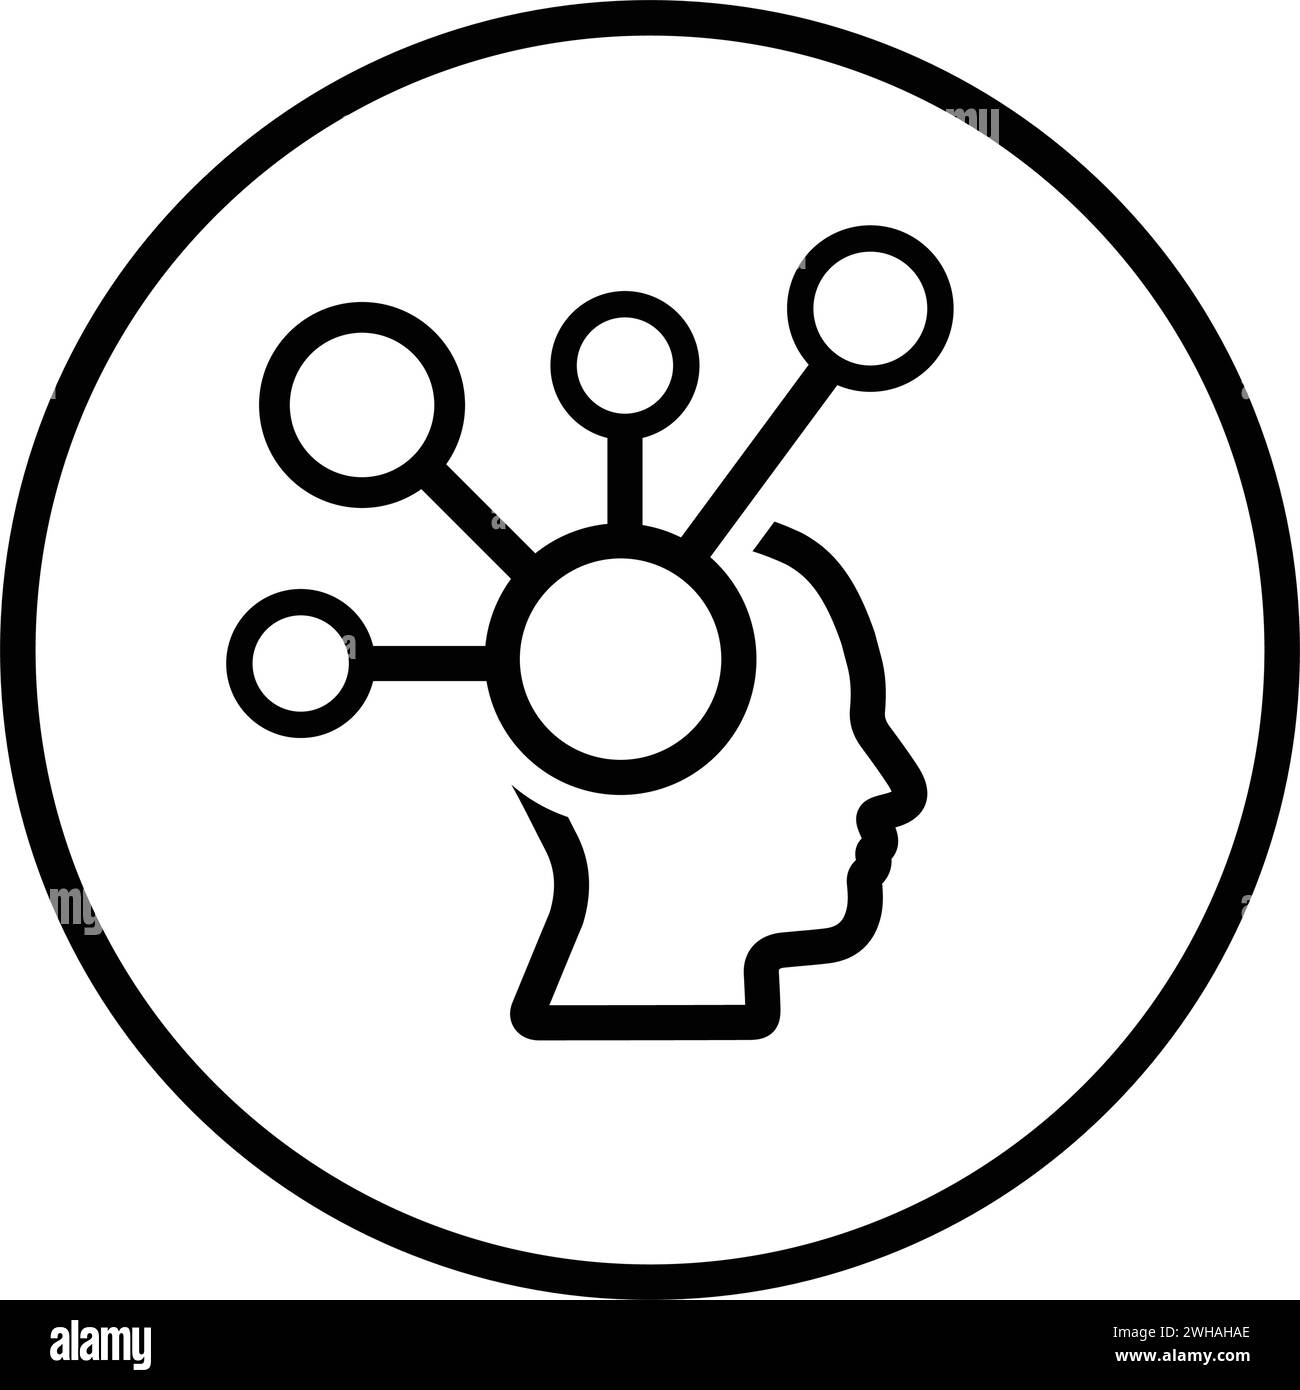 Mindmap-Symbol. Flache Vektor-EPS für Infografiken, Webdesign, Präsentationen und gedruckte Materialien. Stock Vektor